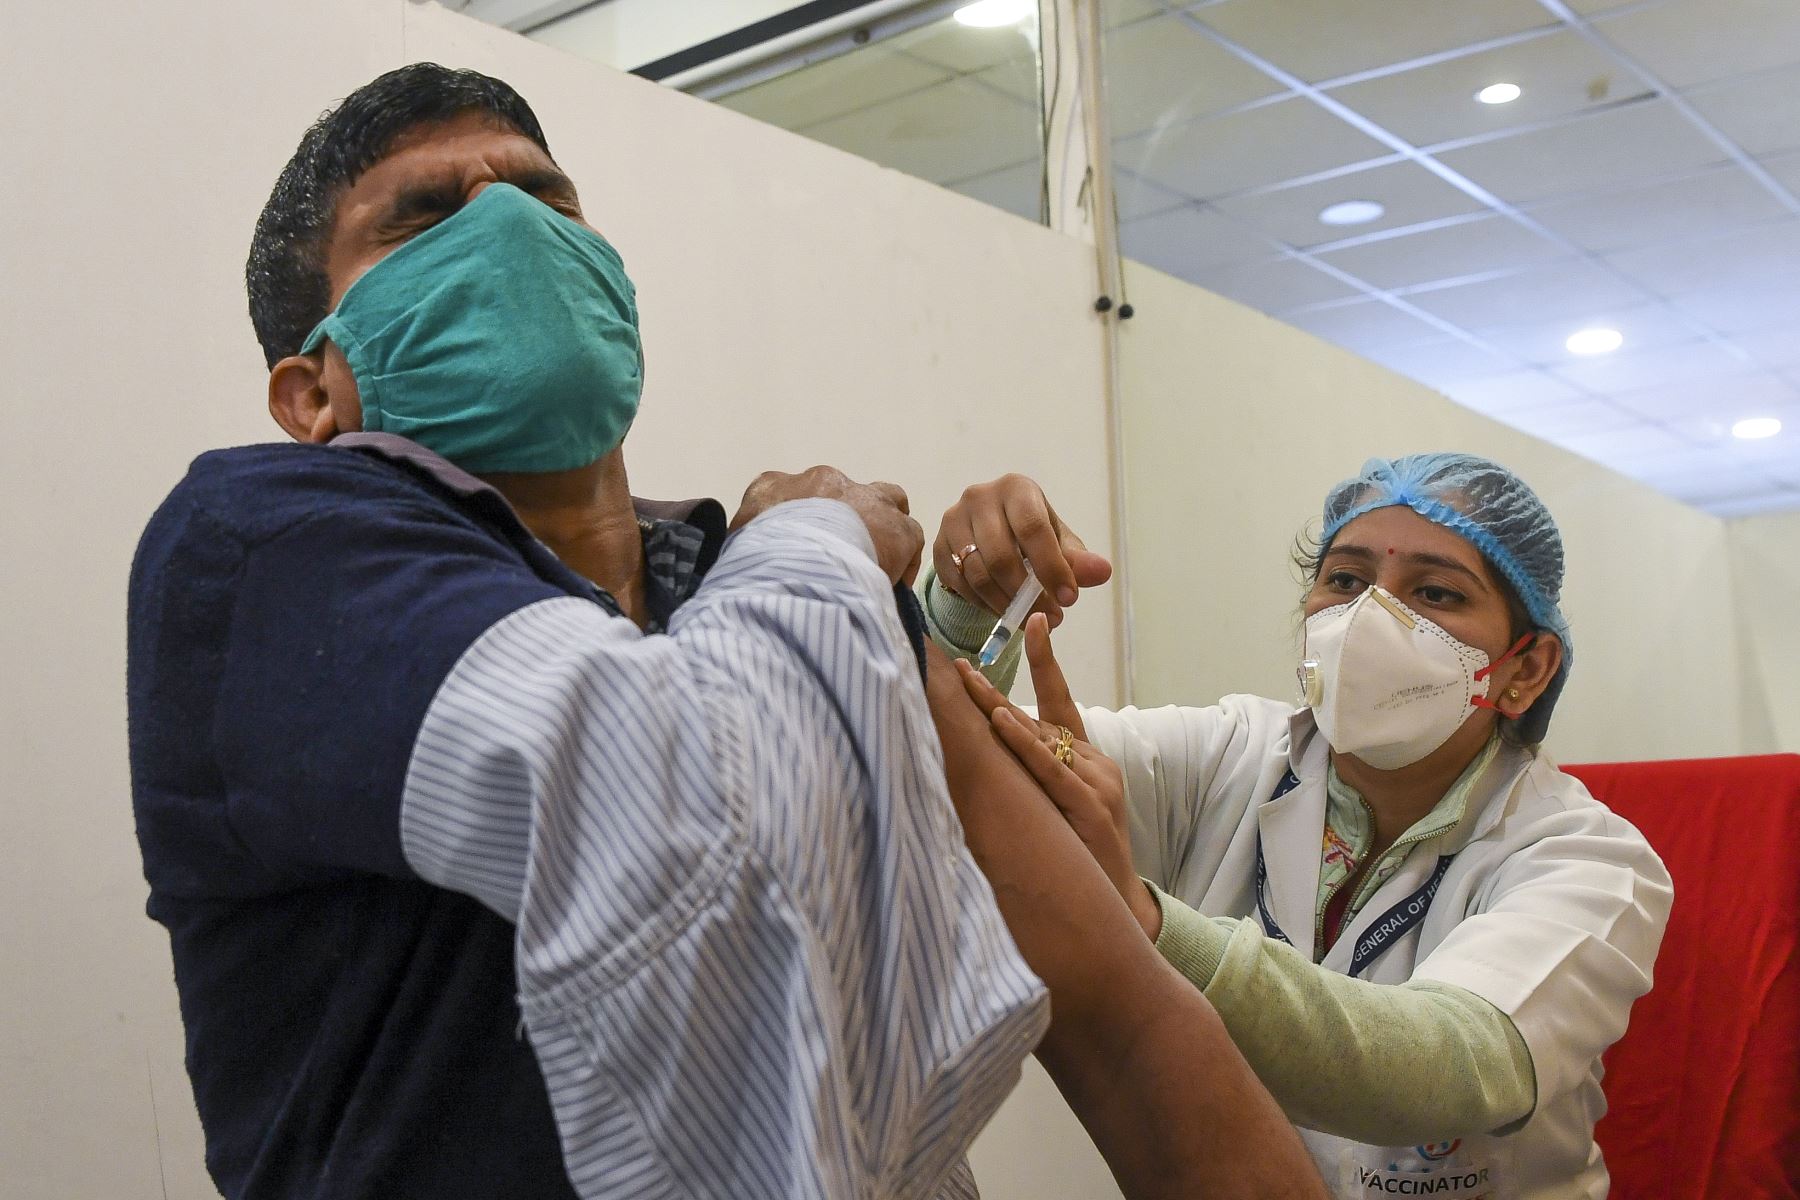 Un trabajador médico vacuna a un colega con una vacuna contra el coronavirus Covid-19 en un hospital de Nueva Delhi.
Foto: AFP